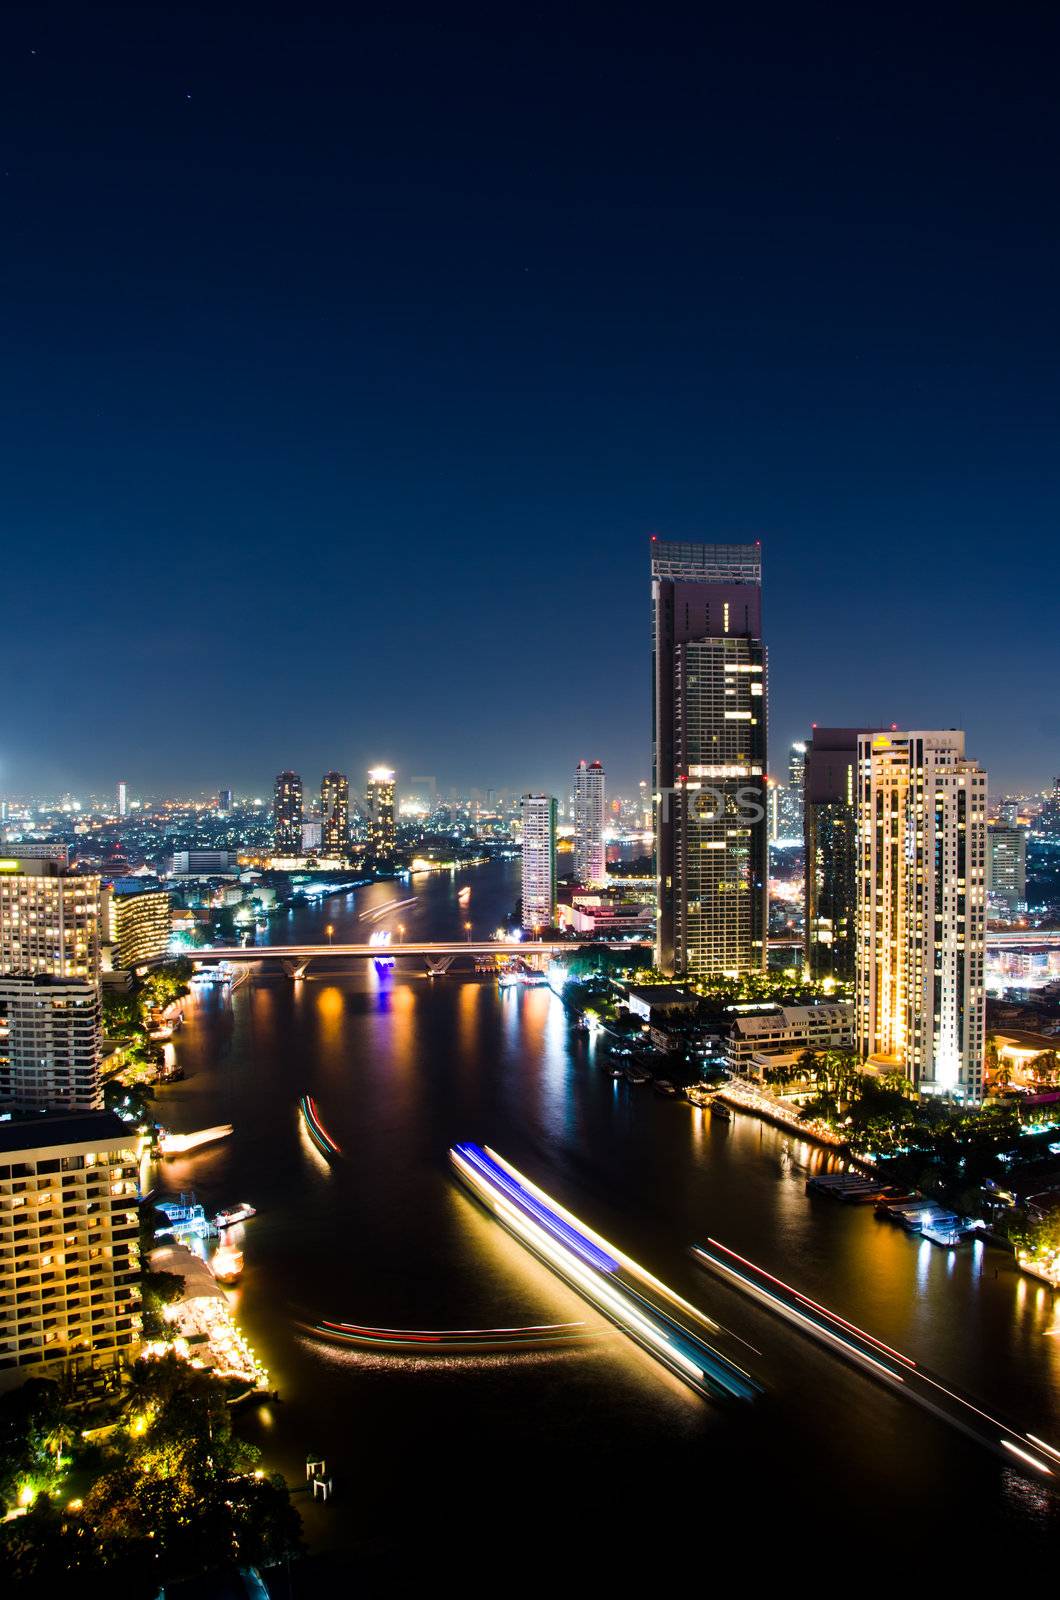 Bangkok City Night, Thailand. by chatchai